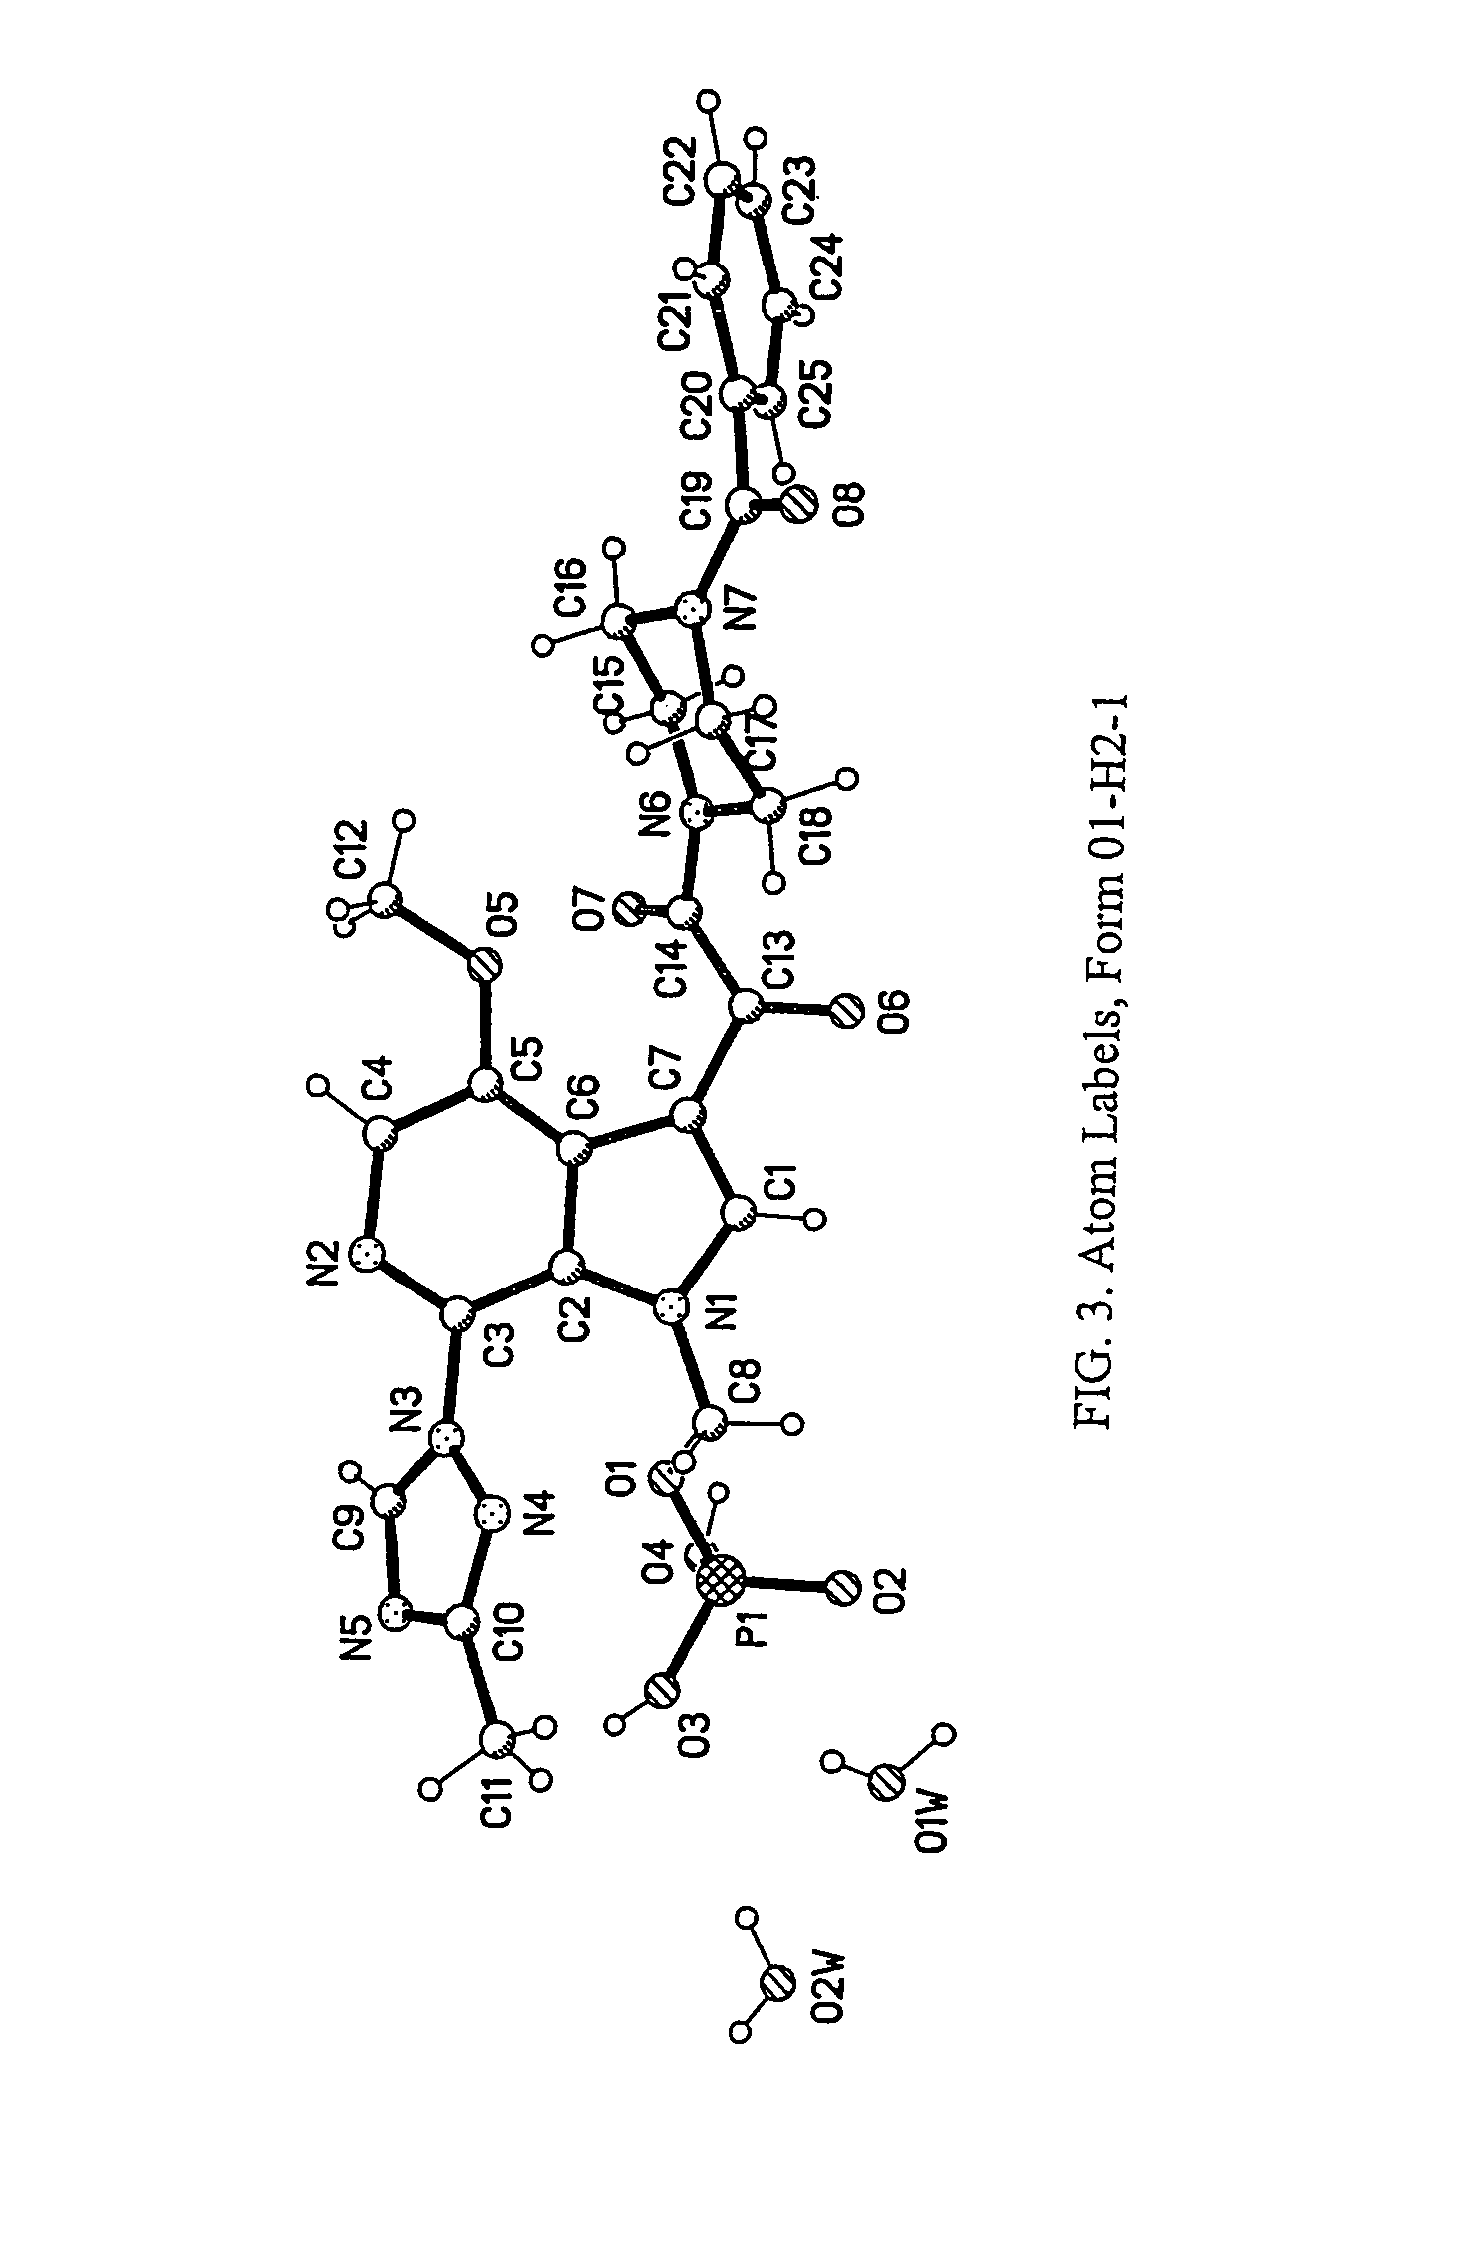 Crystalline forms of 1-benzoyl-4-[2-[4-methoxy-7-(3-methyl-1<i>H</i>-1,2,4-triazol-1-YL)-1-[(phosphonooxy)methyl]-1<i>H</i>-pyrrolo[2,3-<i>C</i>]pyridin-3-YL]-1,2-dioxoethyl]-piperazine